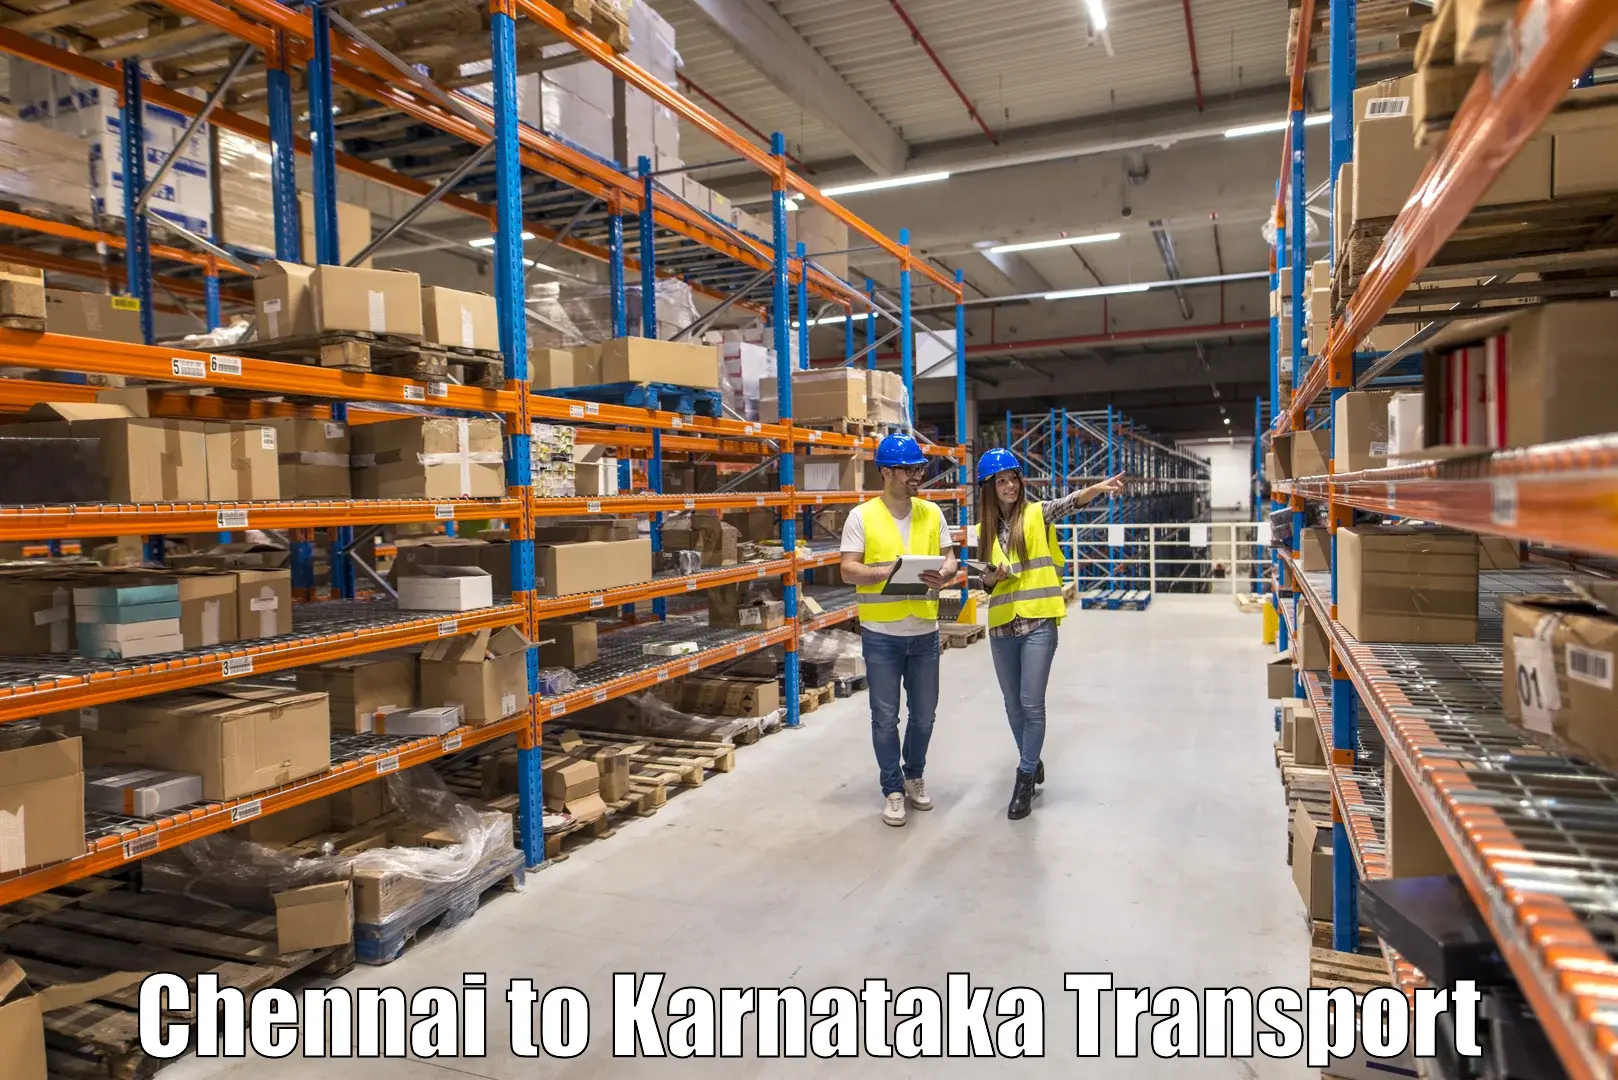 Express transport services Chennai to Kanjarakatte